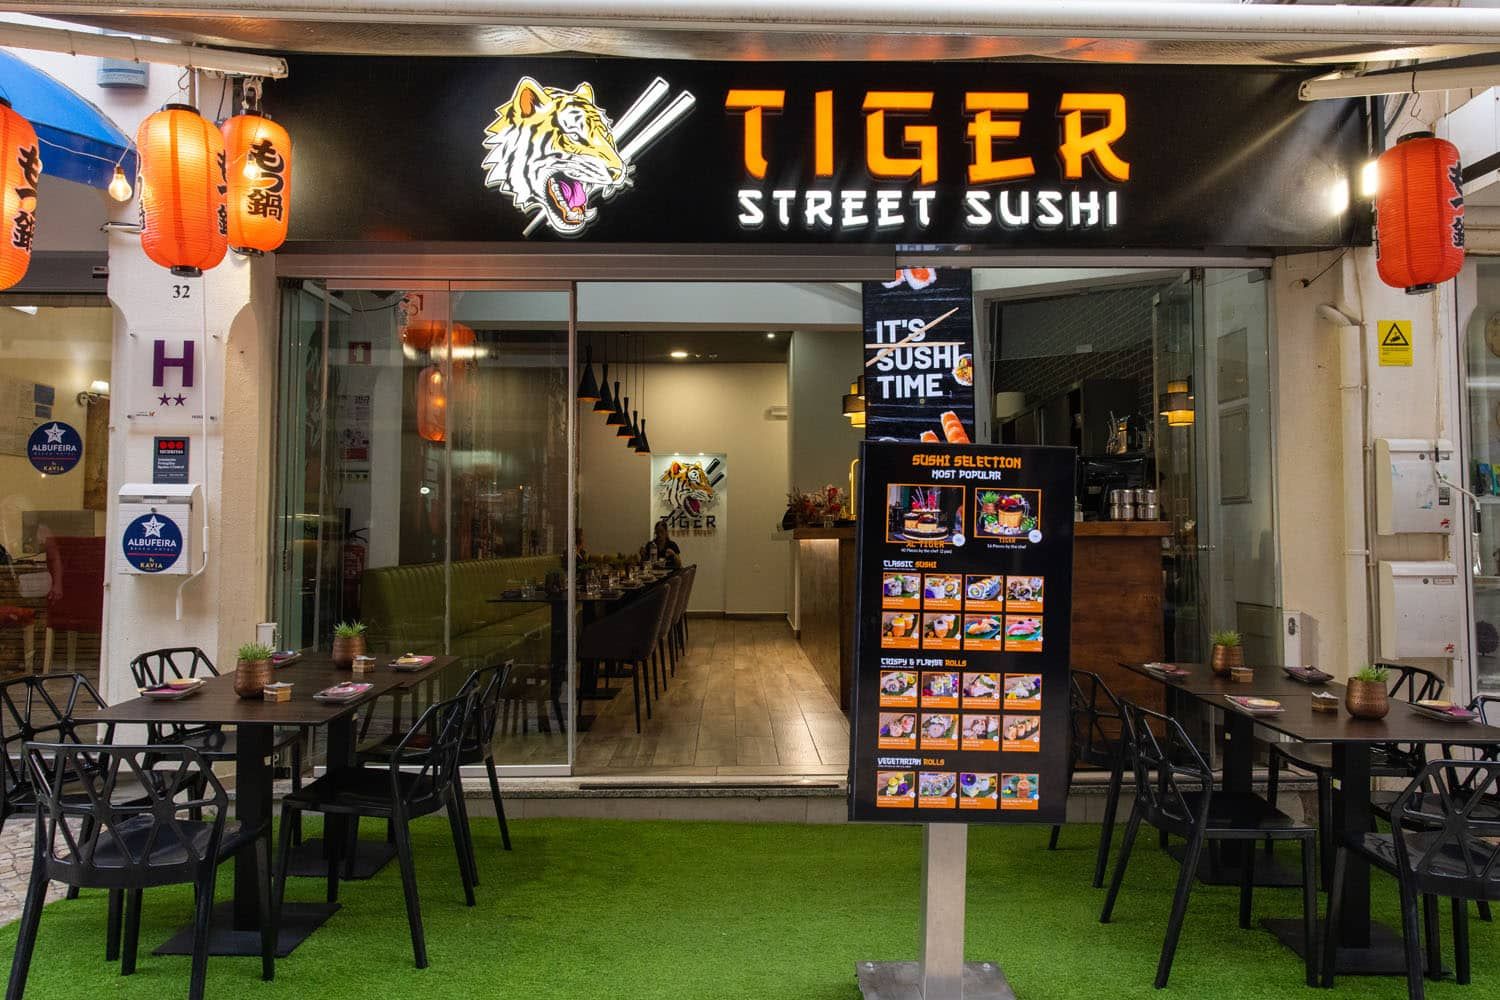 Tiger Street Sushi